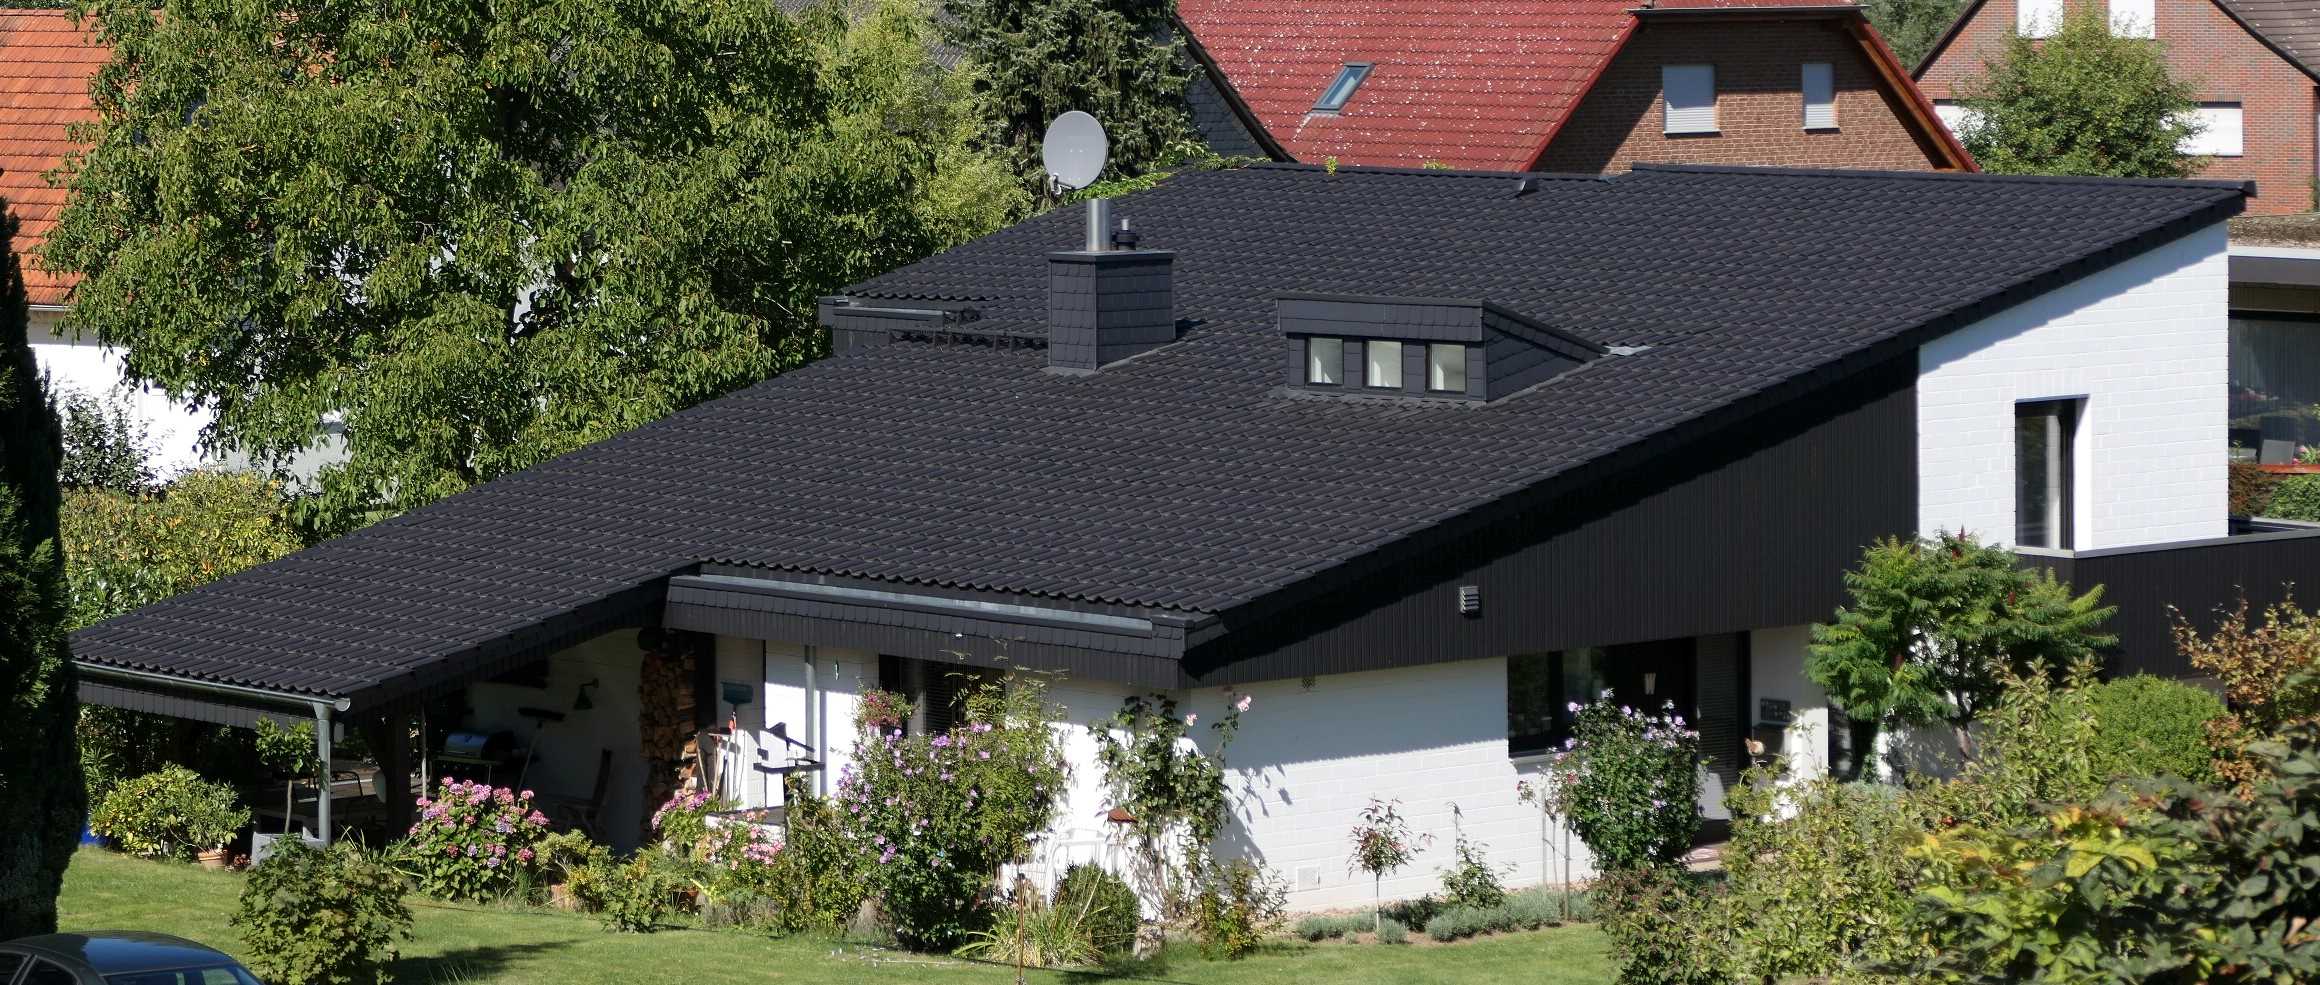 Henke Dachdecker | Zimmerei | Solartechnik - Dacheindeckung mit Tondachziegeln in Bückeburg